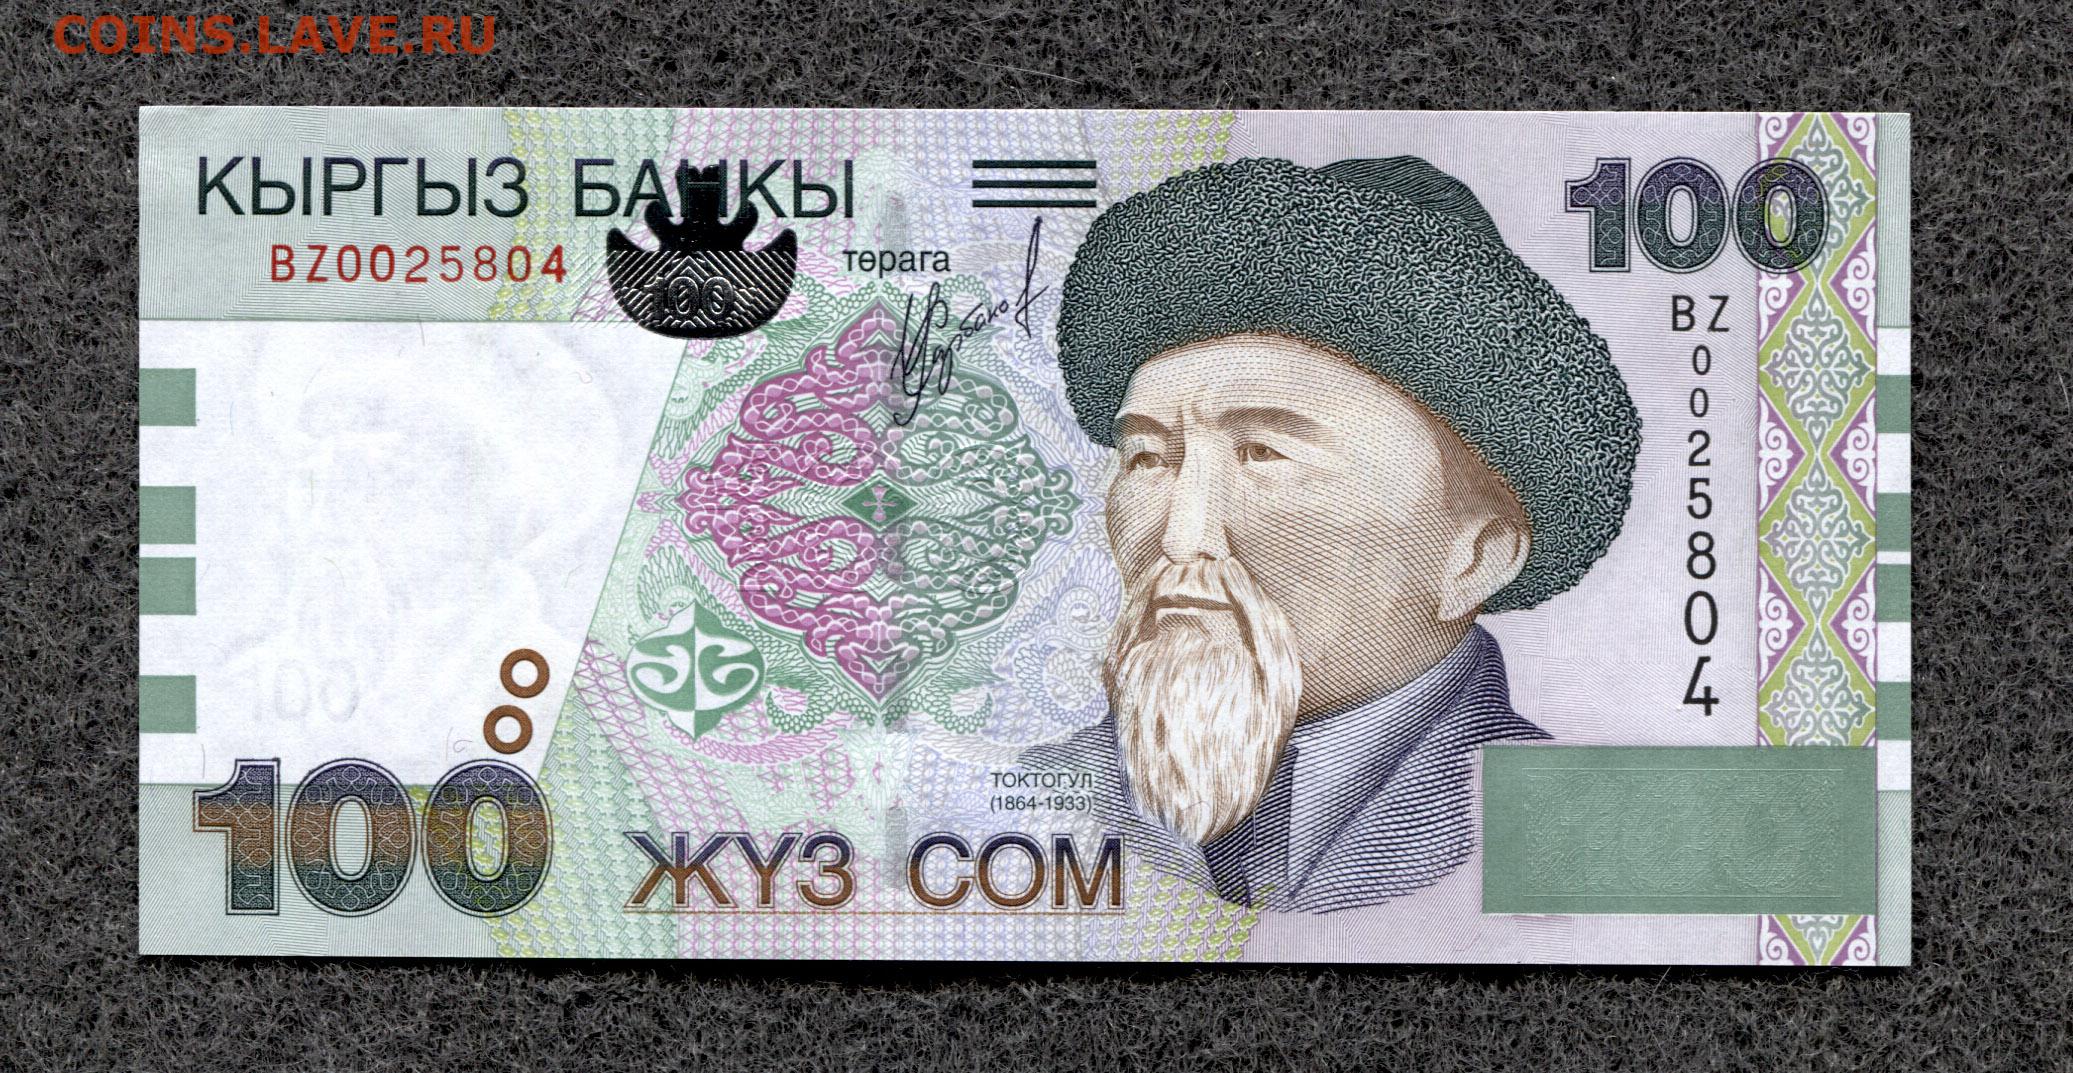 Киргизский сум. 100 Сомов Киргизии. Купюра 1 сом Киргизия. Киргизия 20 сом 2002. Бона Киргизия 50 сом 2002г.